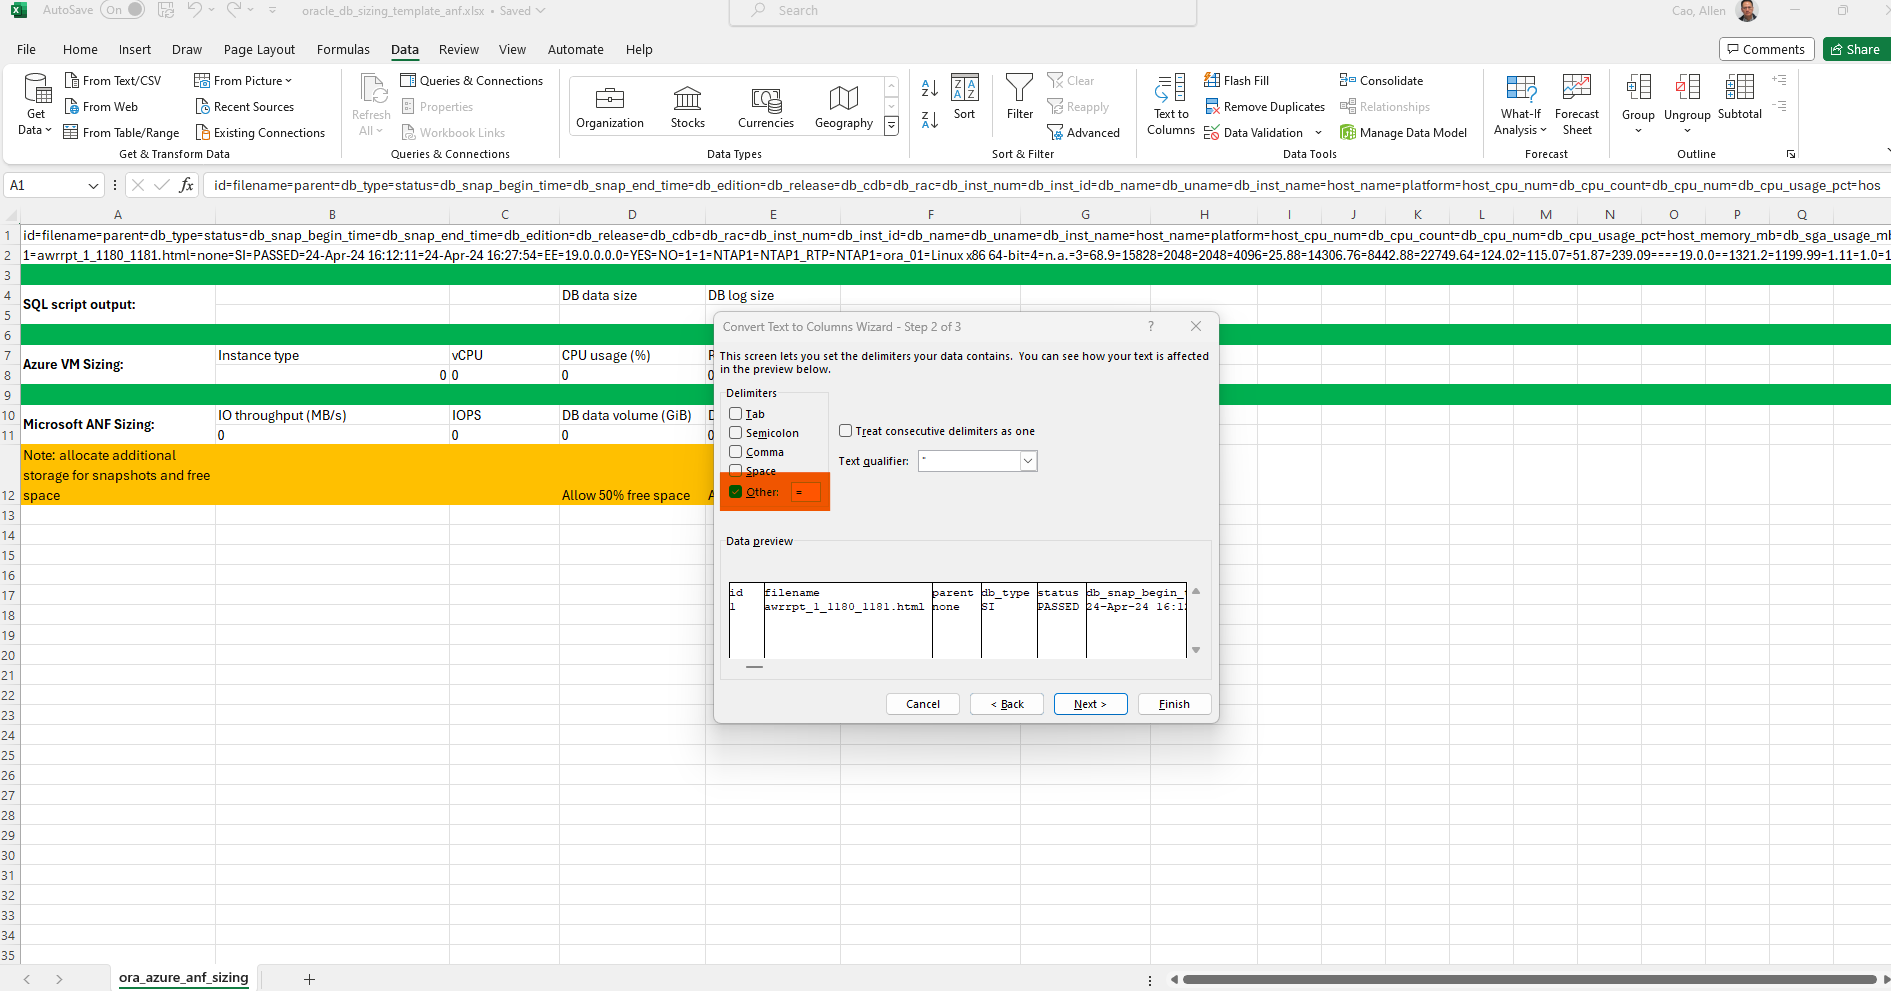 Cette image fournit une capture d'écran du modèle Excel pour le dimensionnement Oracle